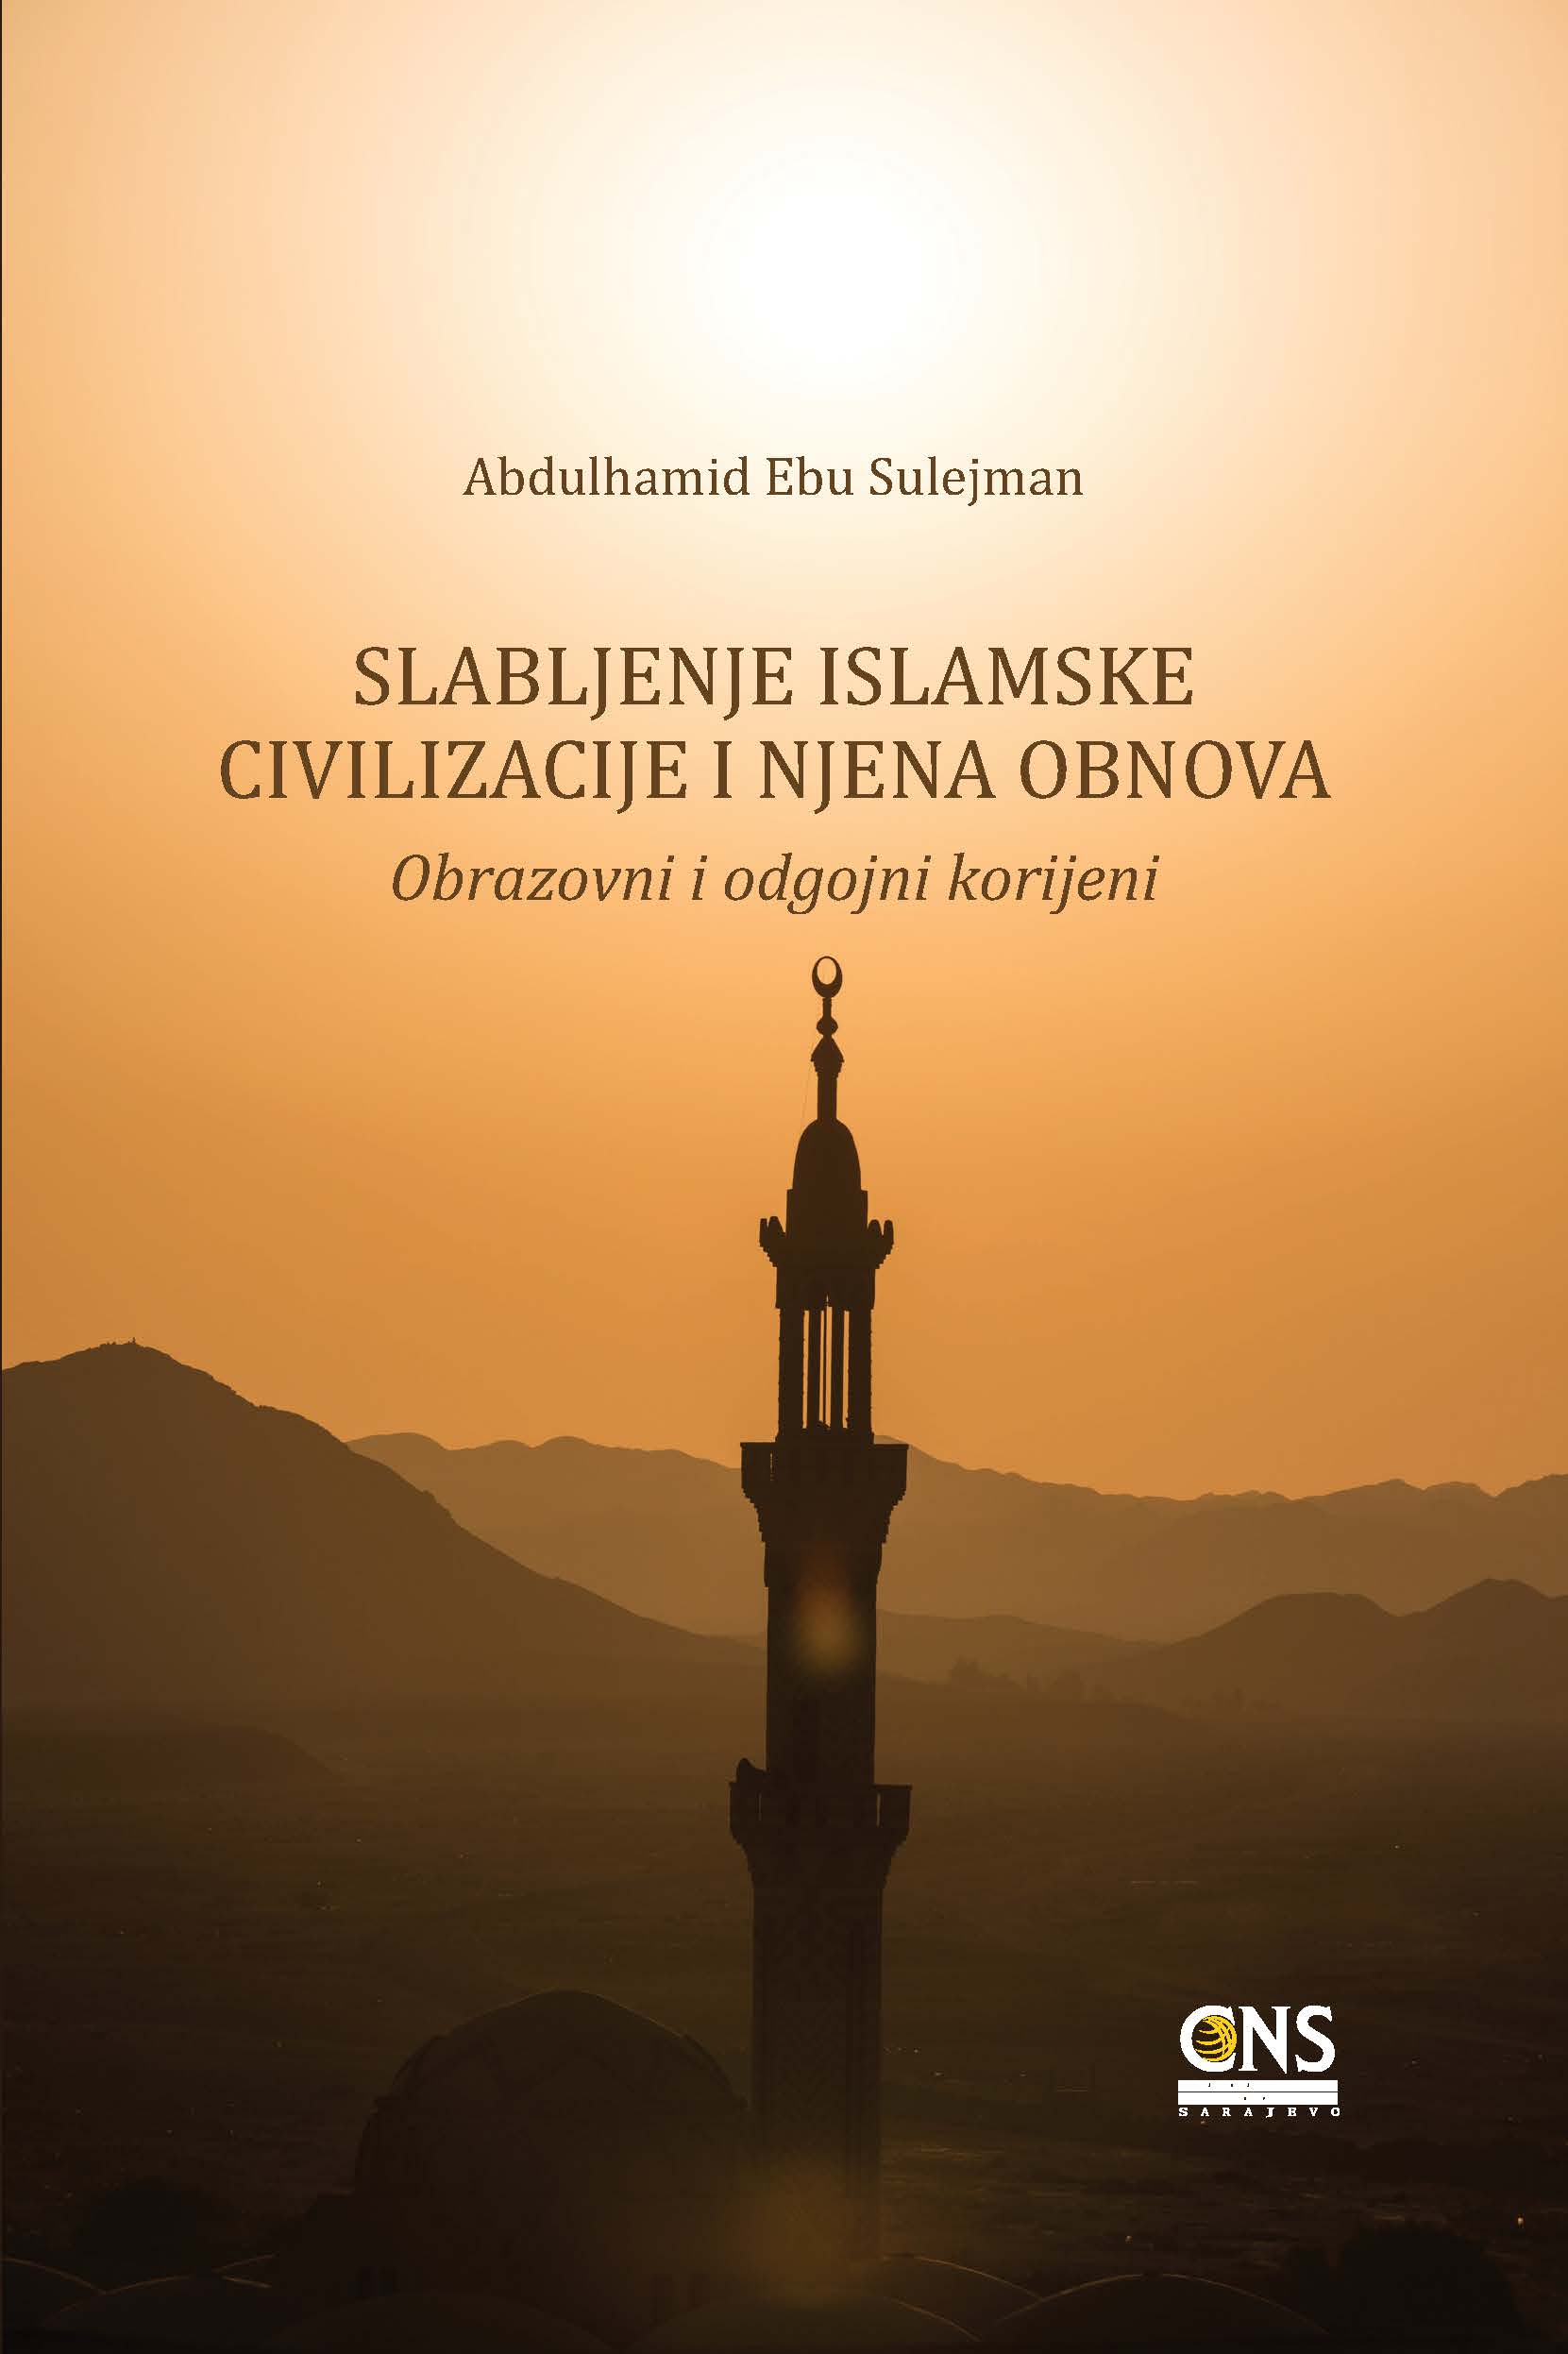 (Bosnian Language) Slabljenje islamske civilizacije i njena obnova: obrazovni i odgojni korijeni ) Inhiyār al-ḥaḍara al-islāmiyya wa iʿāda binā’ihā